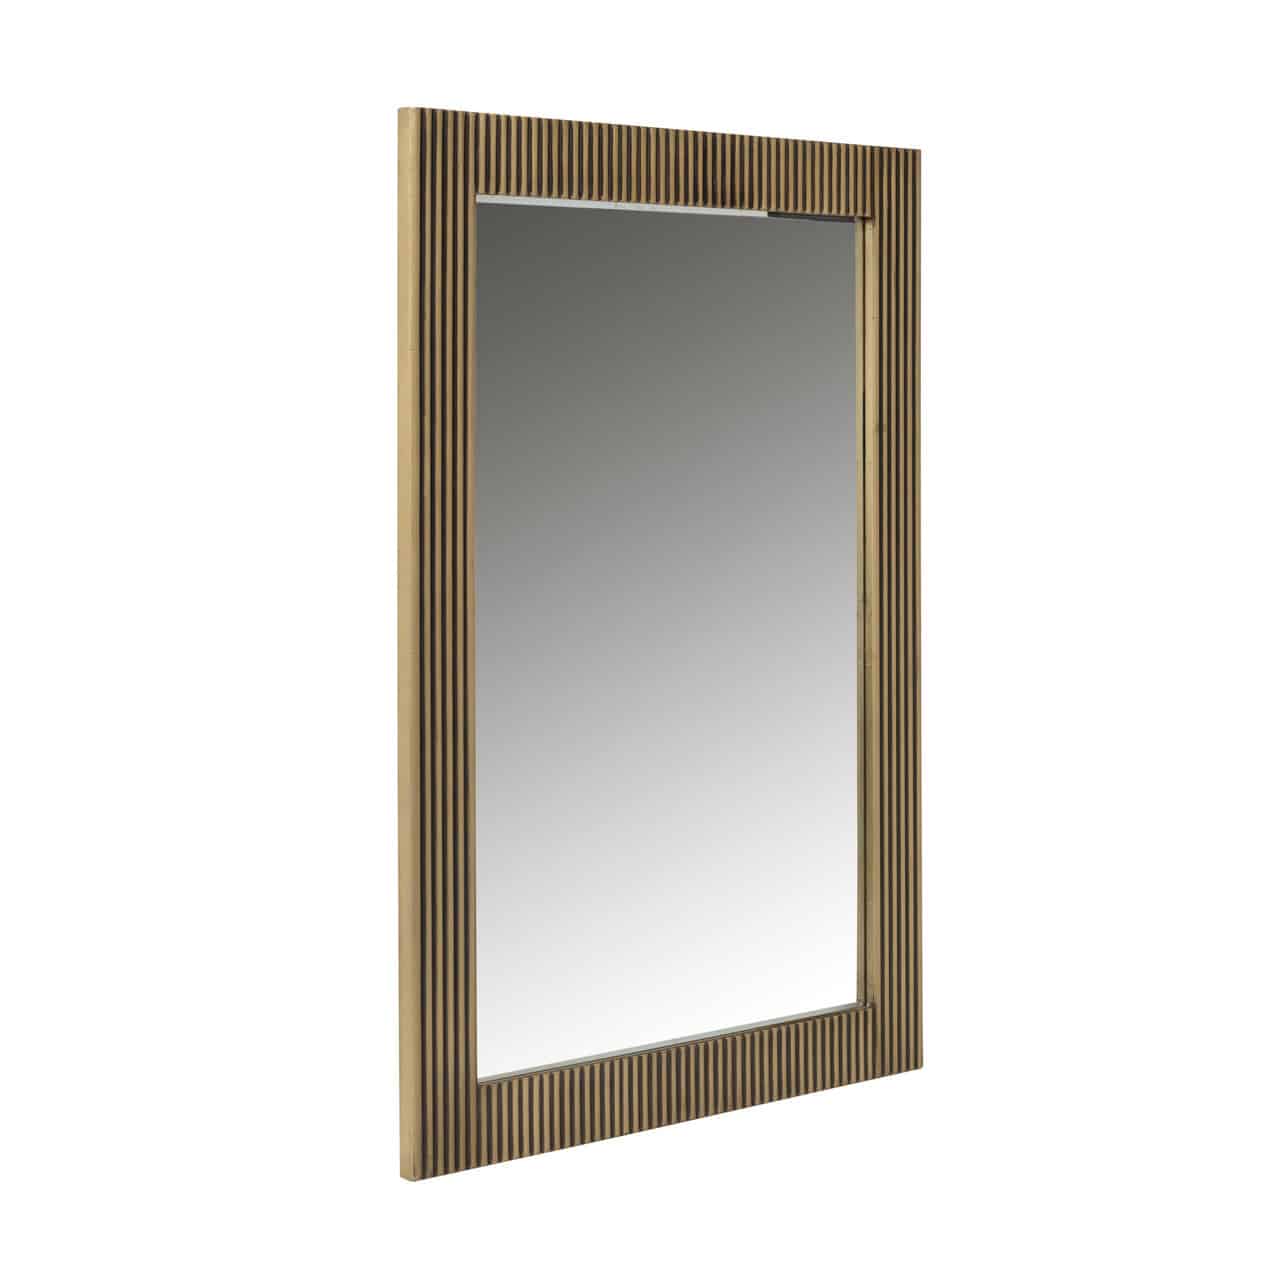 Mirror Ironville rectangularmi-0073richmond